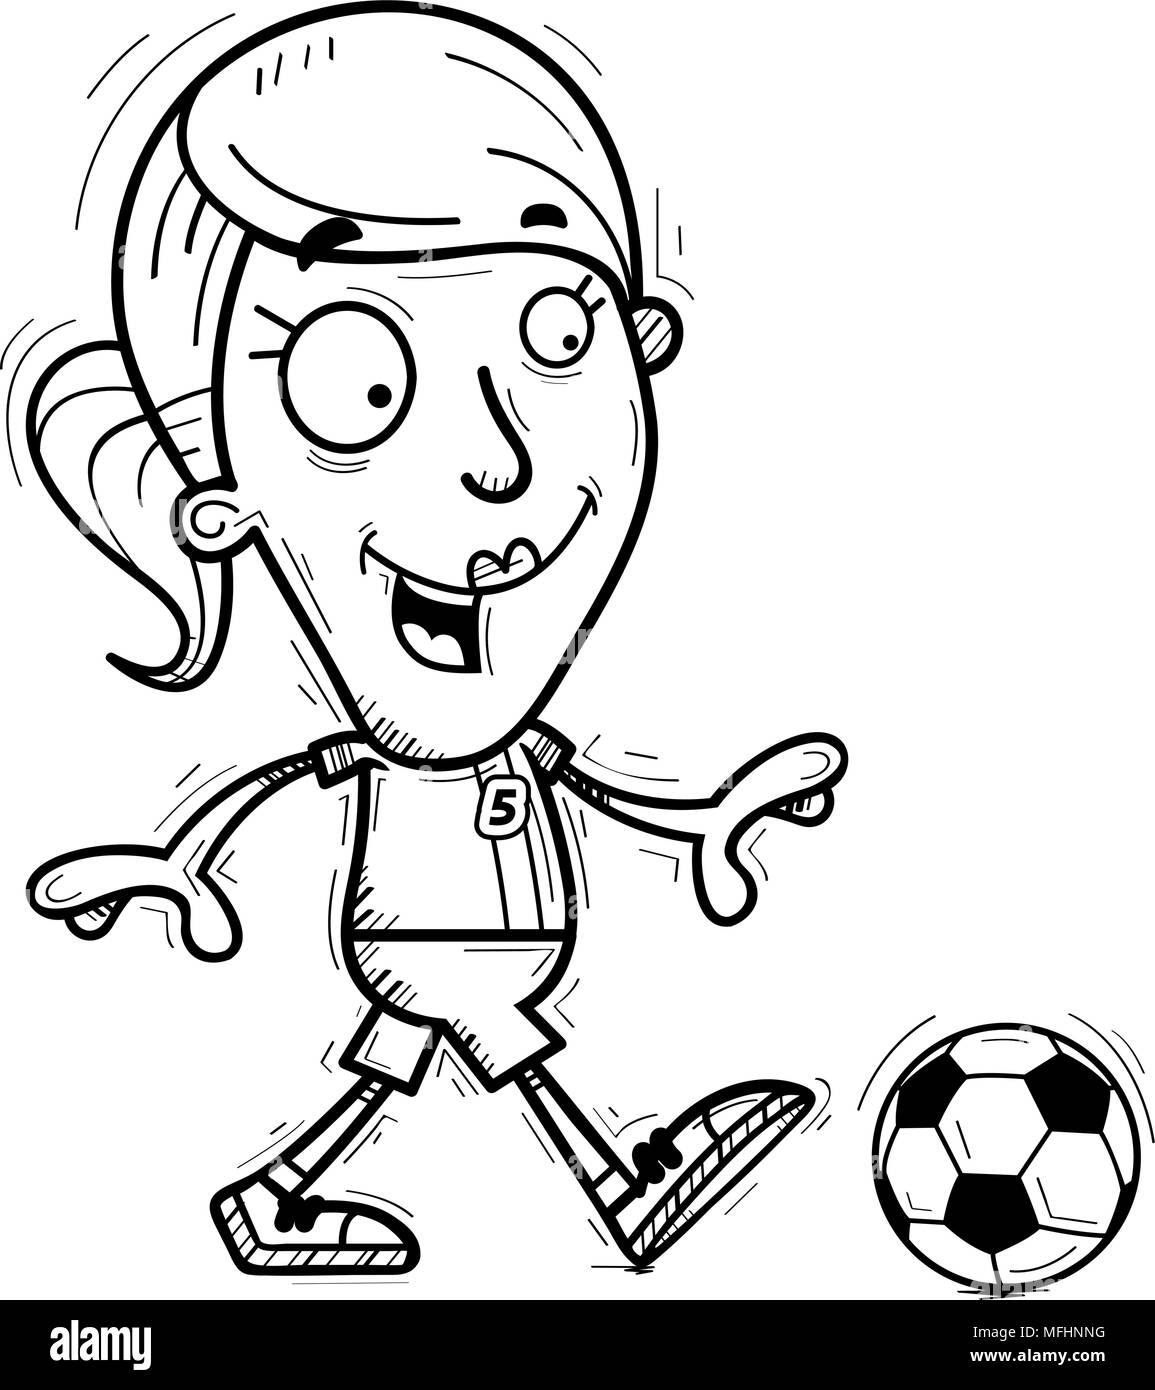 Illustration d'une caricature d'un joueur de soccer femme marche à pied. Illustration de Vecteur